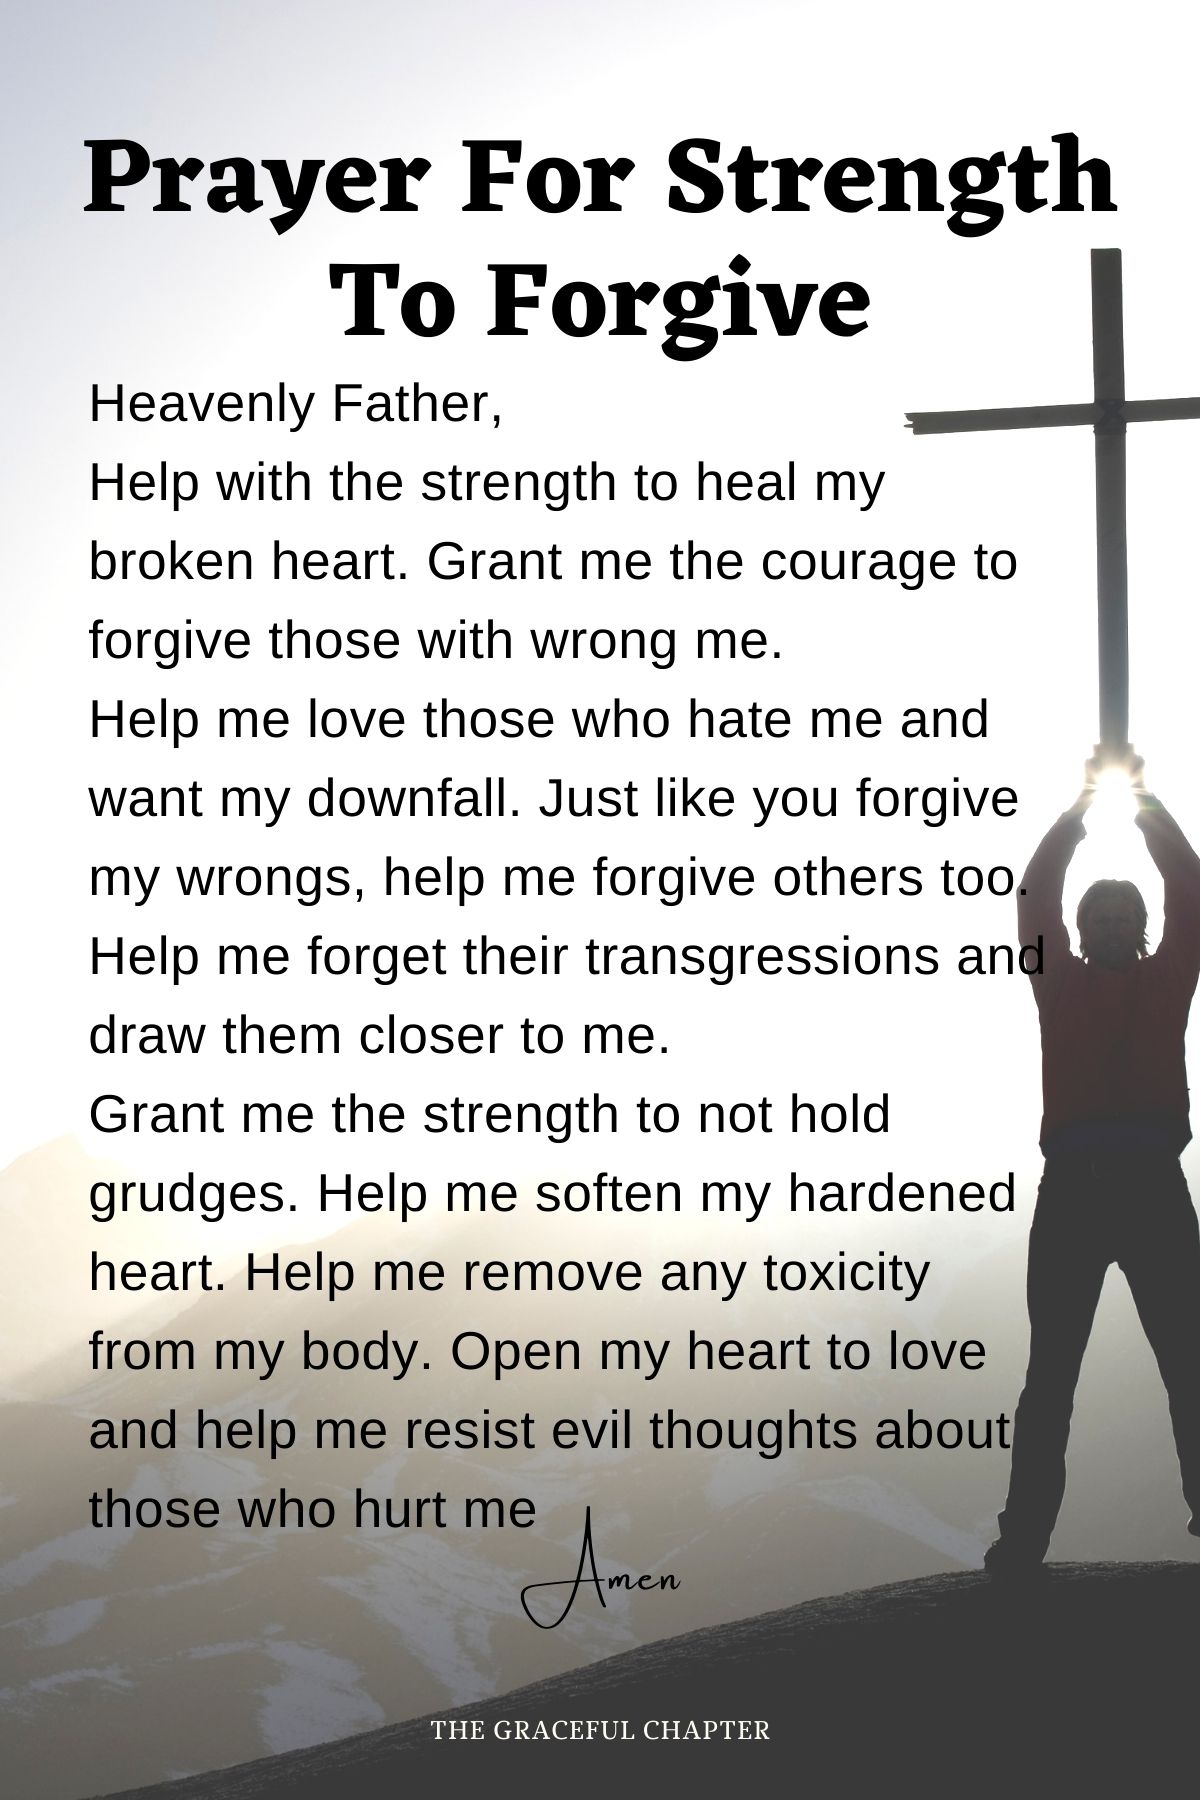 Prayer for strength to forgive